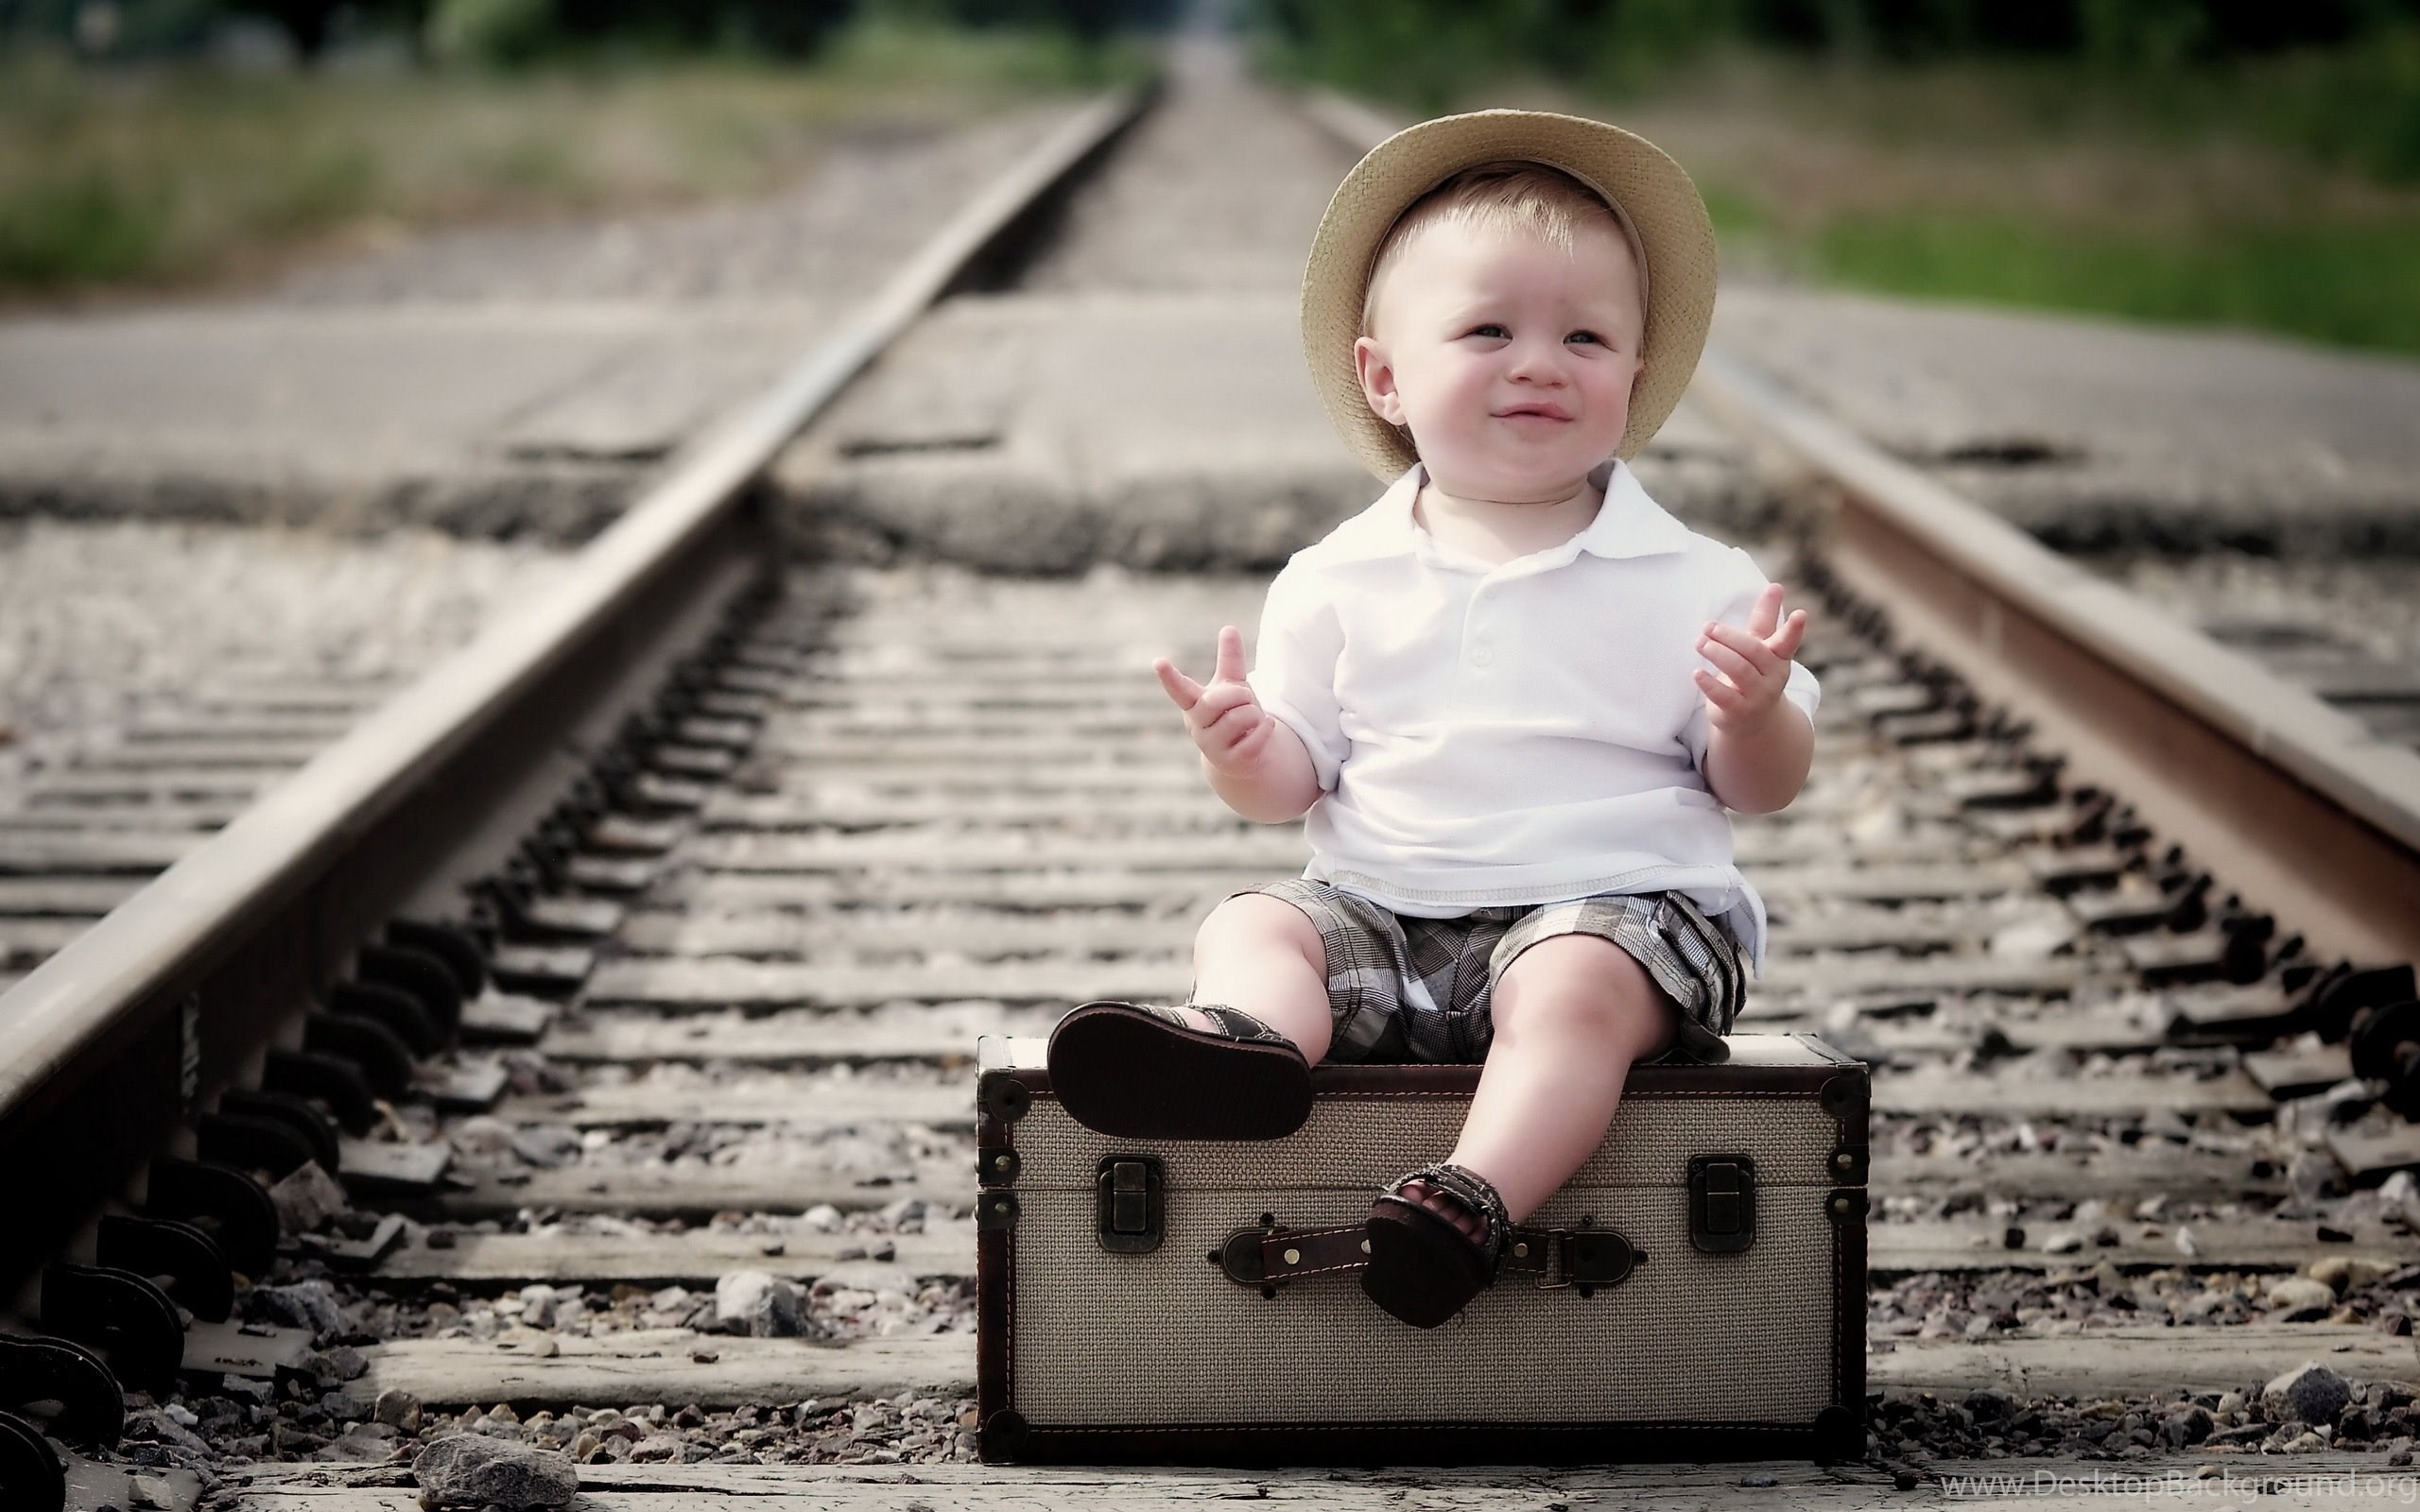 Ребенок с железной дорогой. Железная дорога для детей. Мальчик на железной дороге. Малыш с чемоданом. Мальчик с железной дорогой.